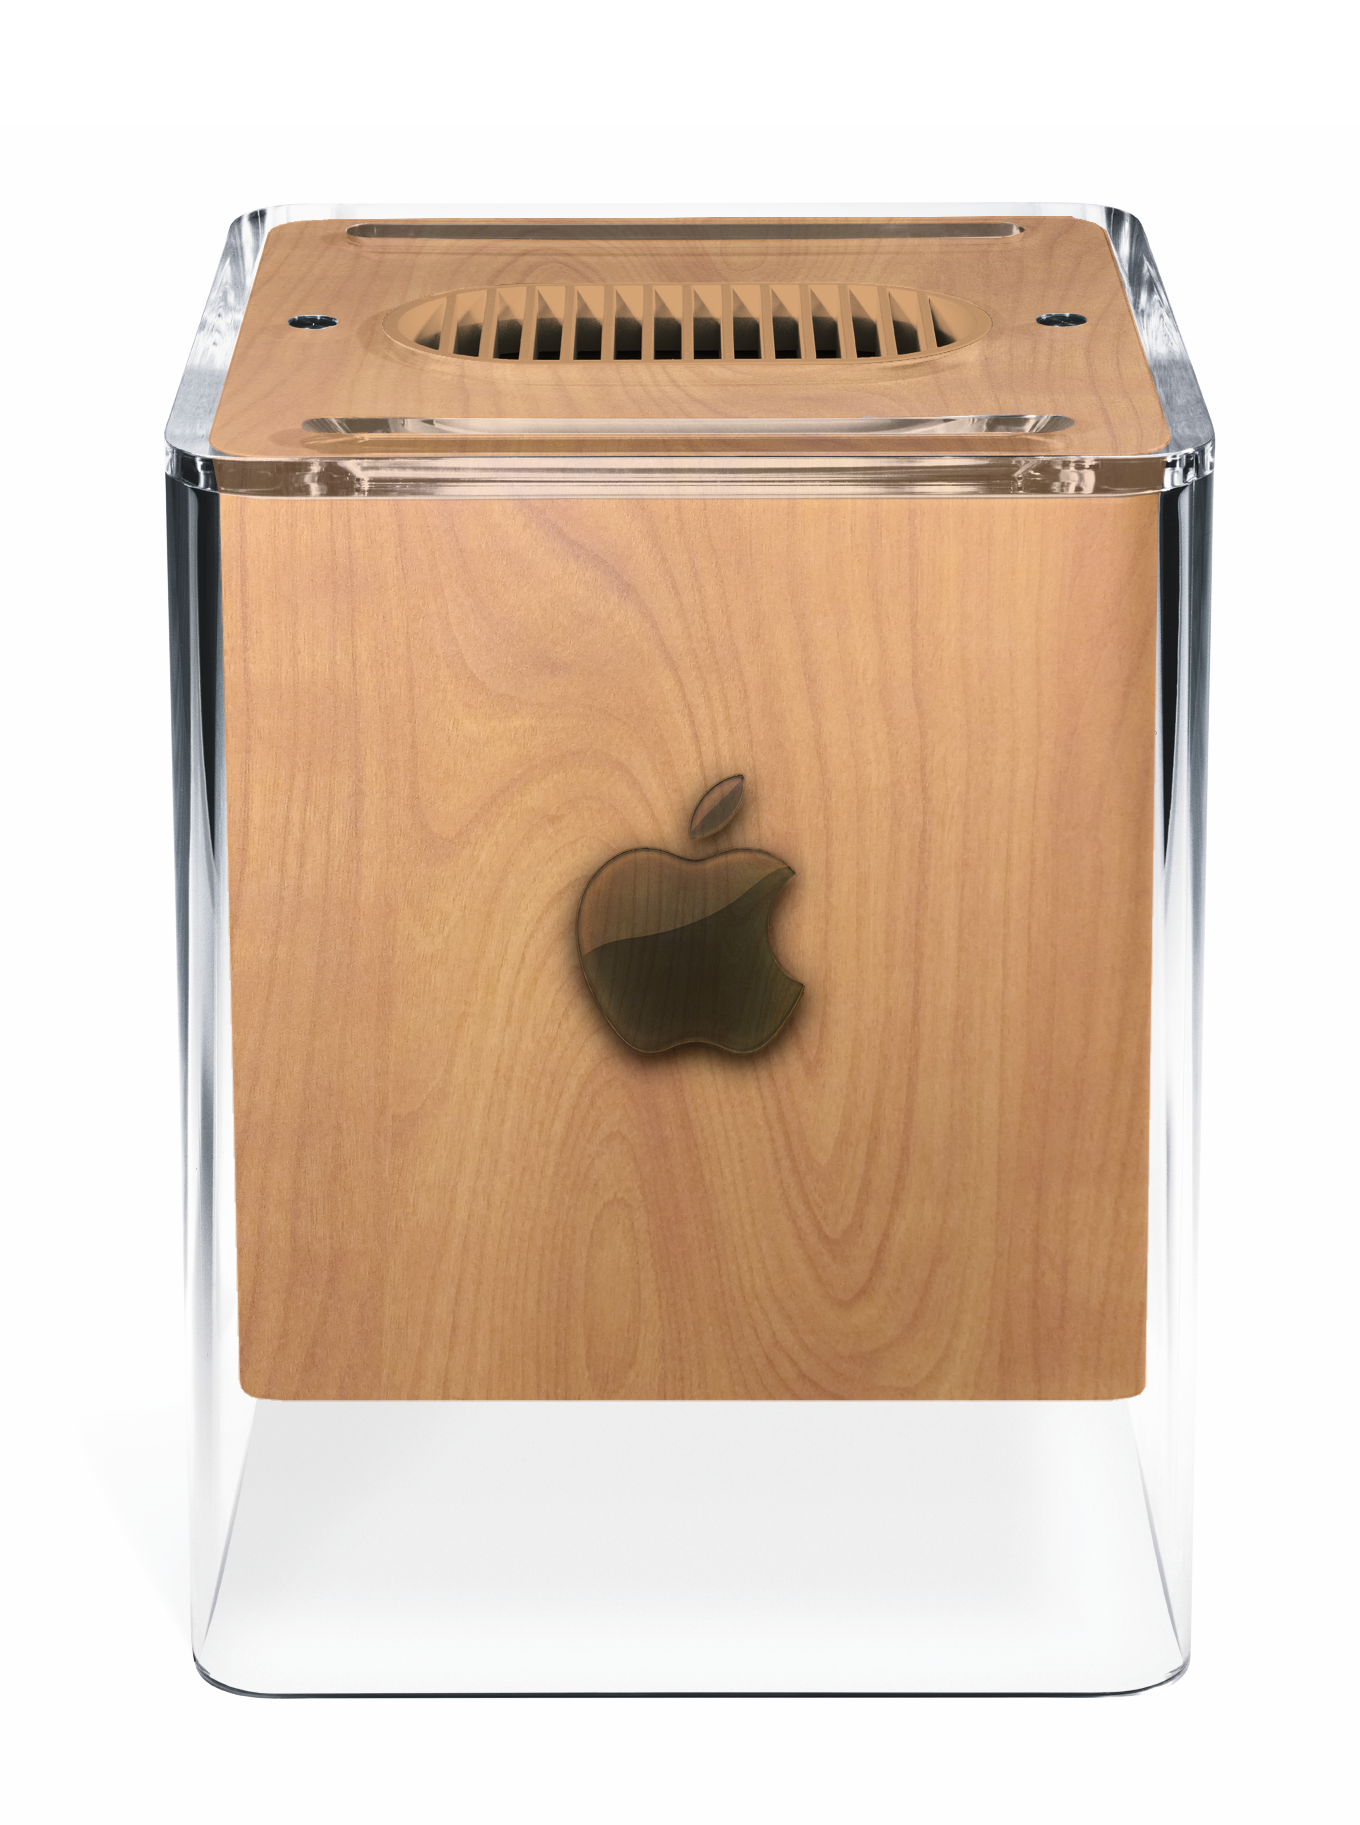 Wooden Power Mac G4 Cube